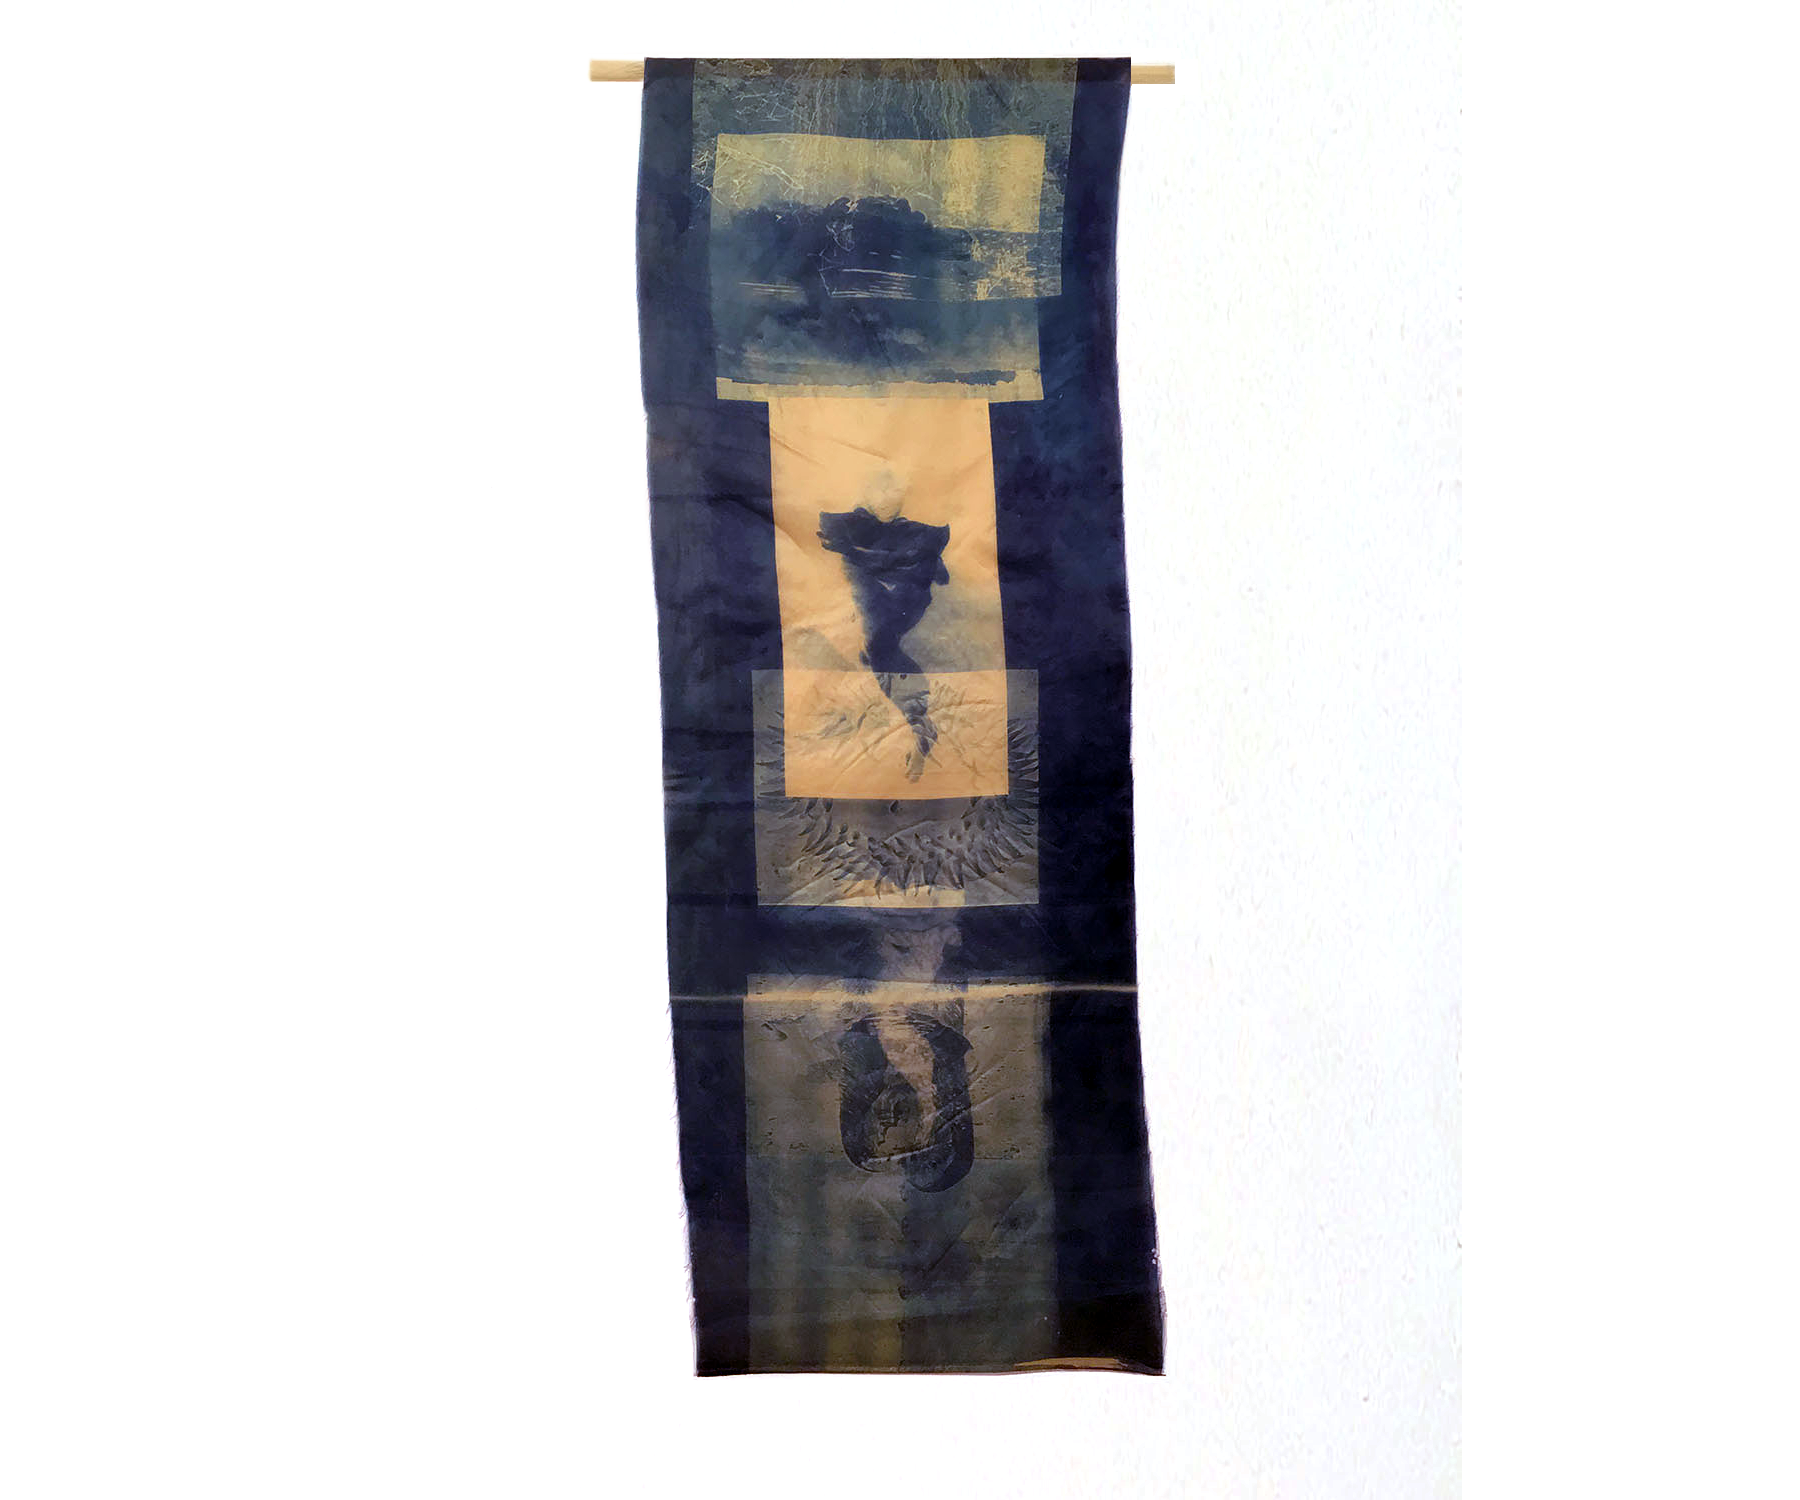  Woman/Water II, 1996, Cyanotype on Silk, 12 x 35 